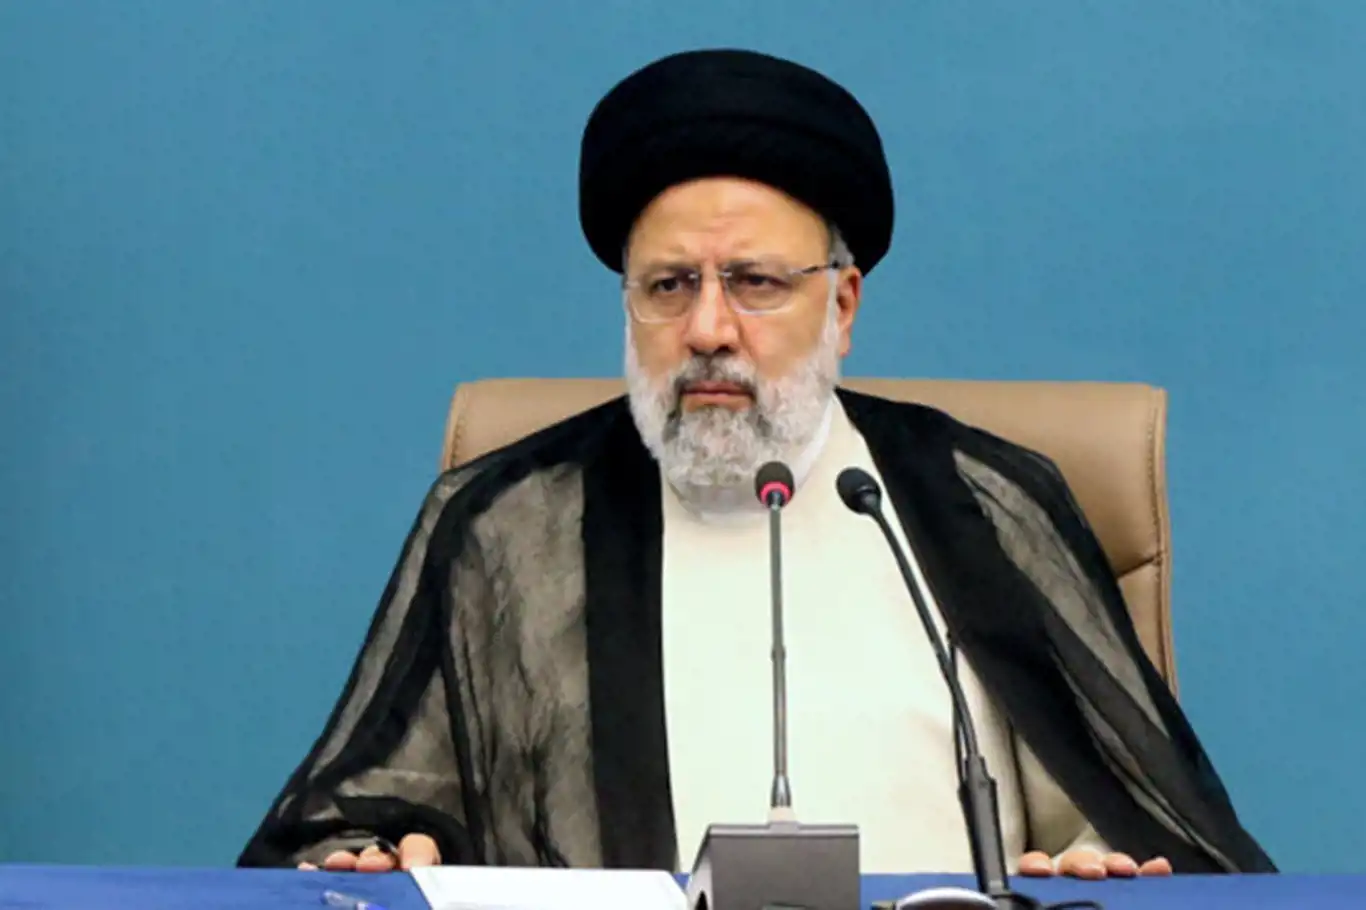 İran Cumhurbaşkanı Reisi, işgal rejiminin saldırılarına sessiz kalanlara seslendi